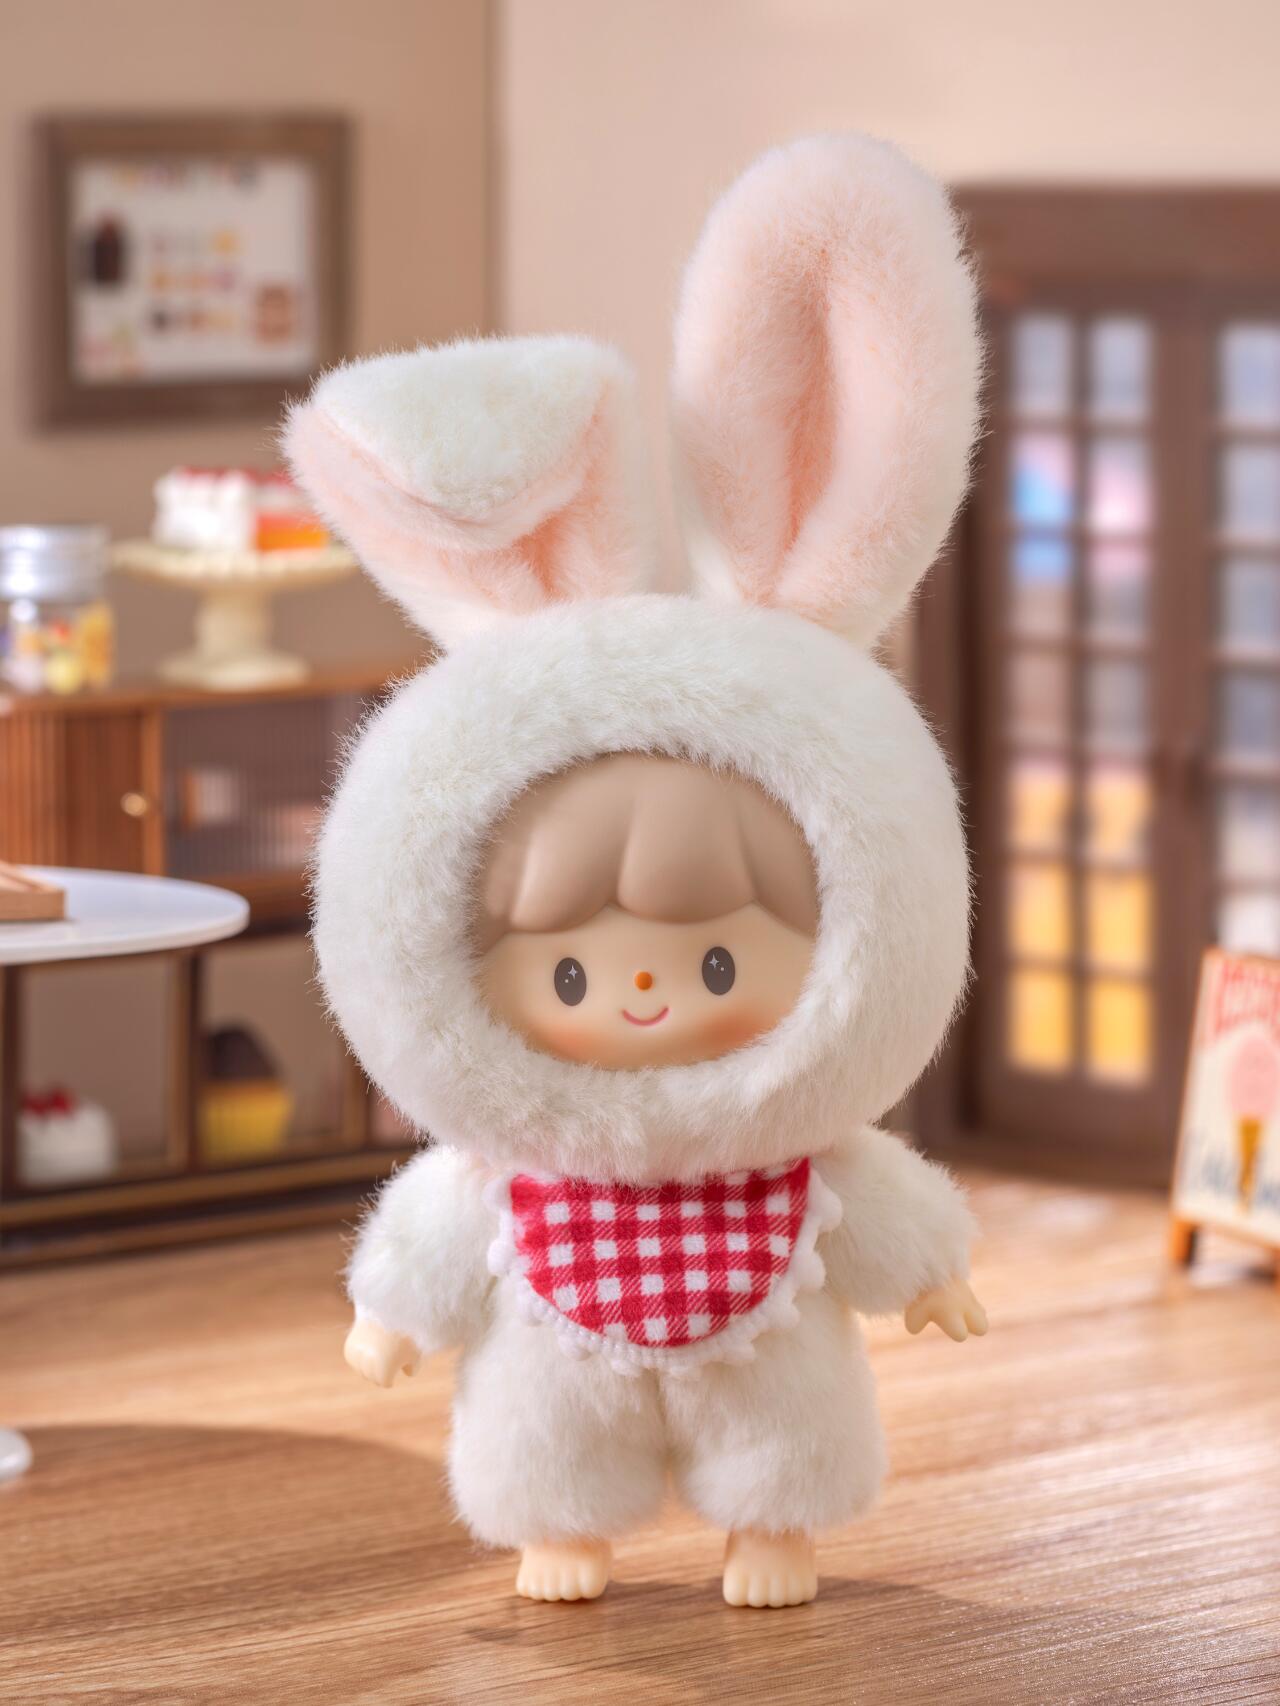 【PRESALE - New F.UN&TB】zZoton Delicious Bunny Series Plush Blind Box